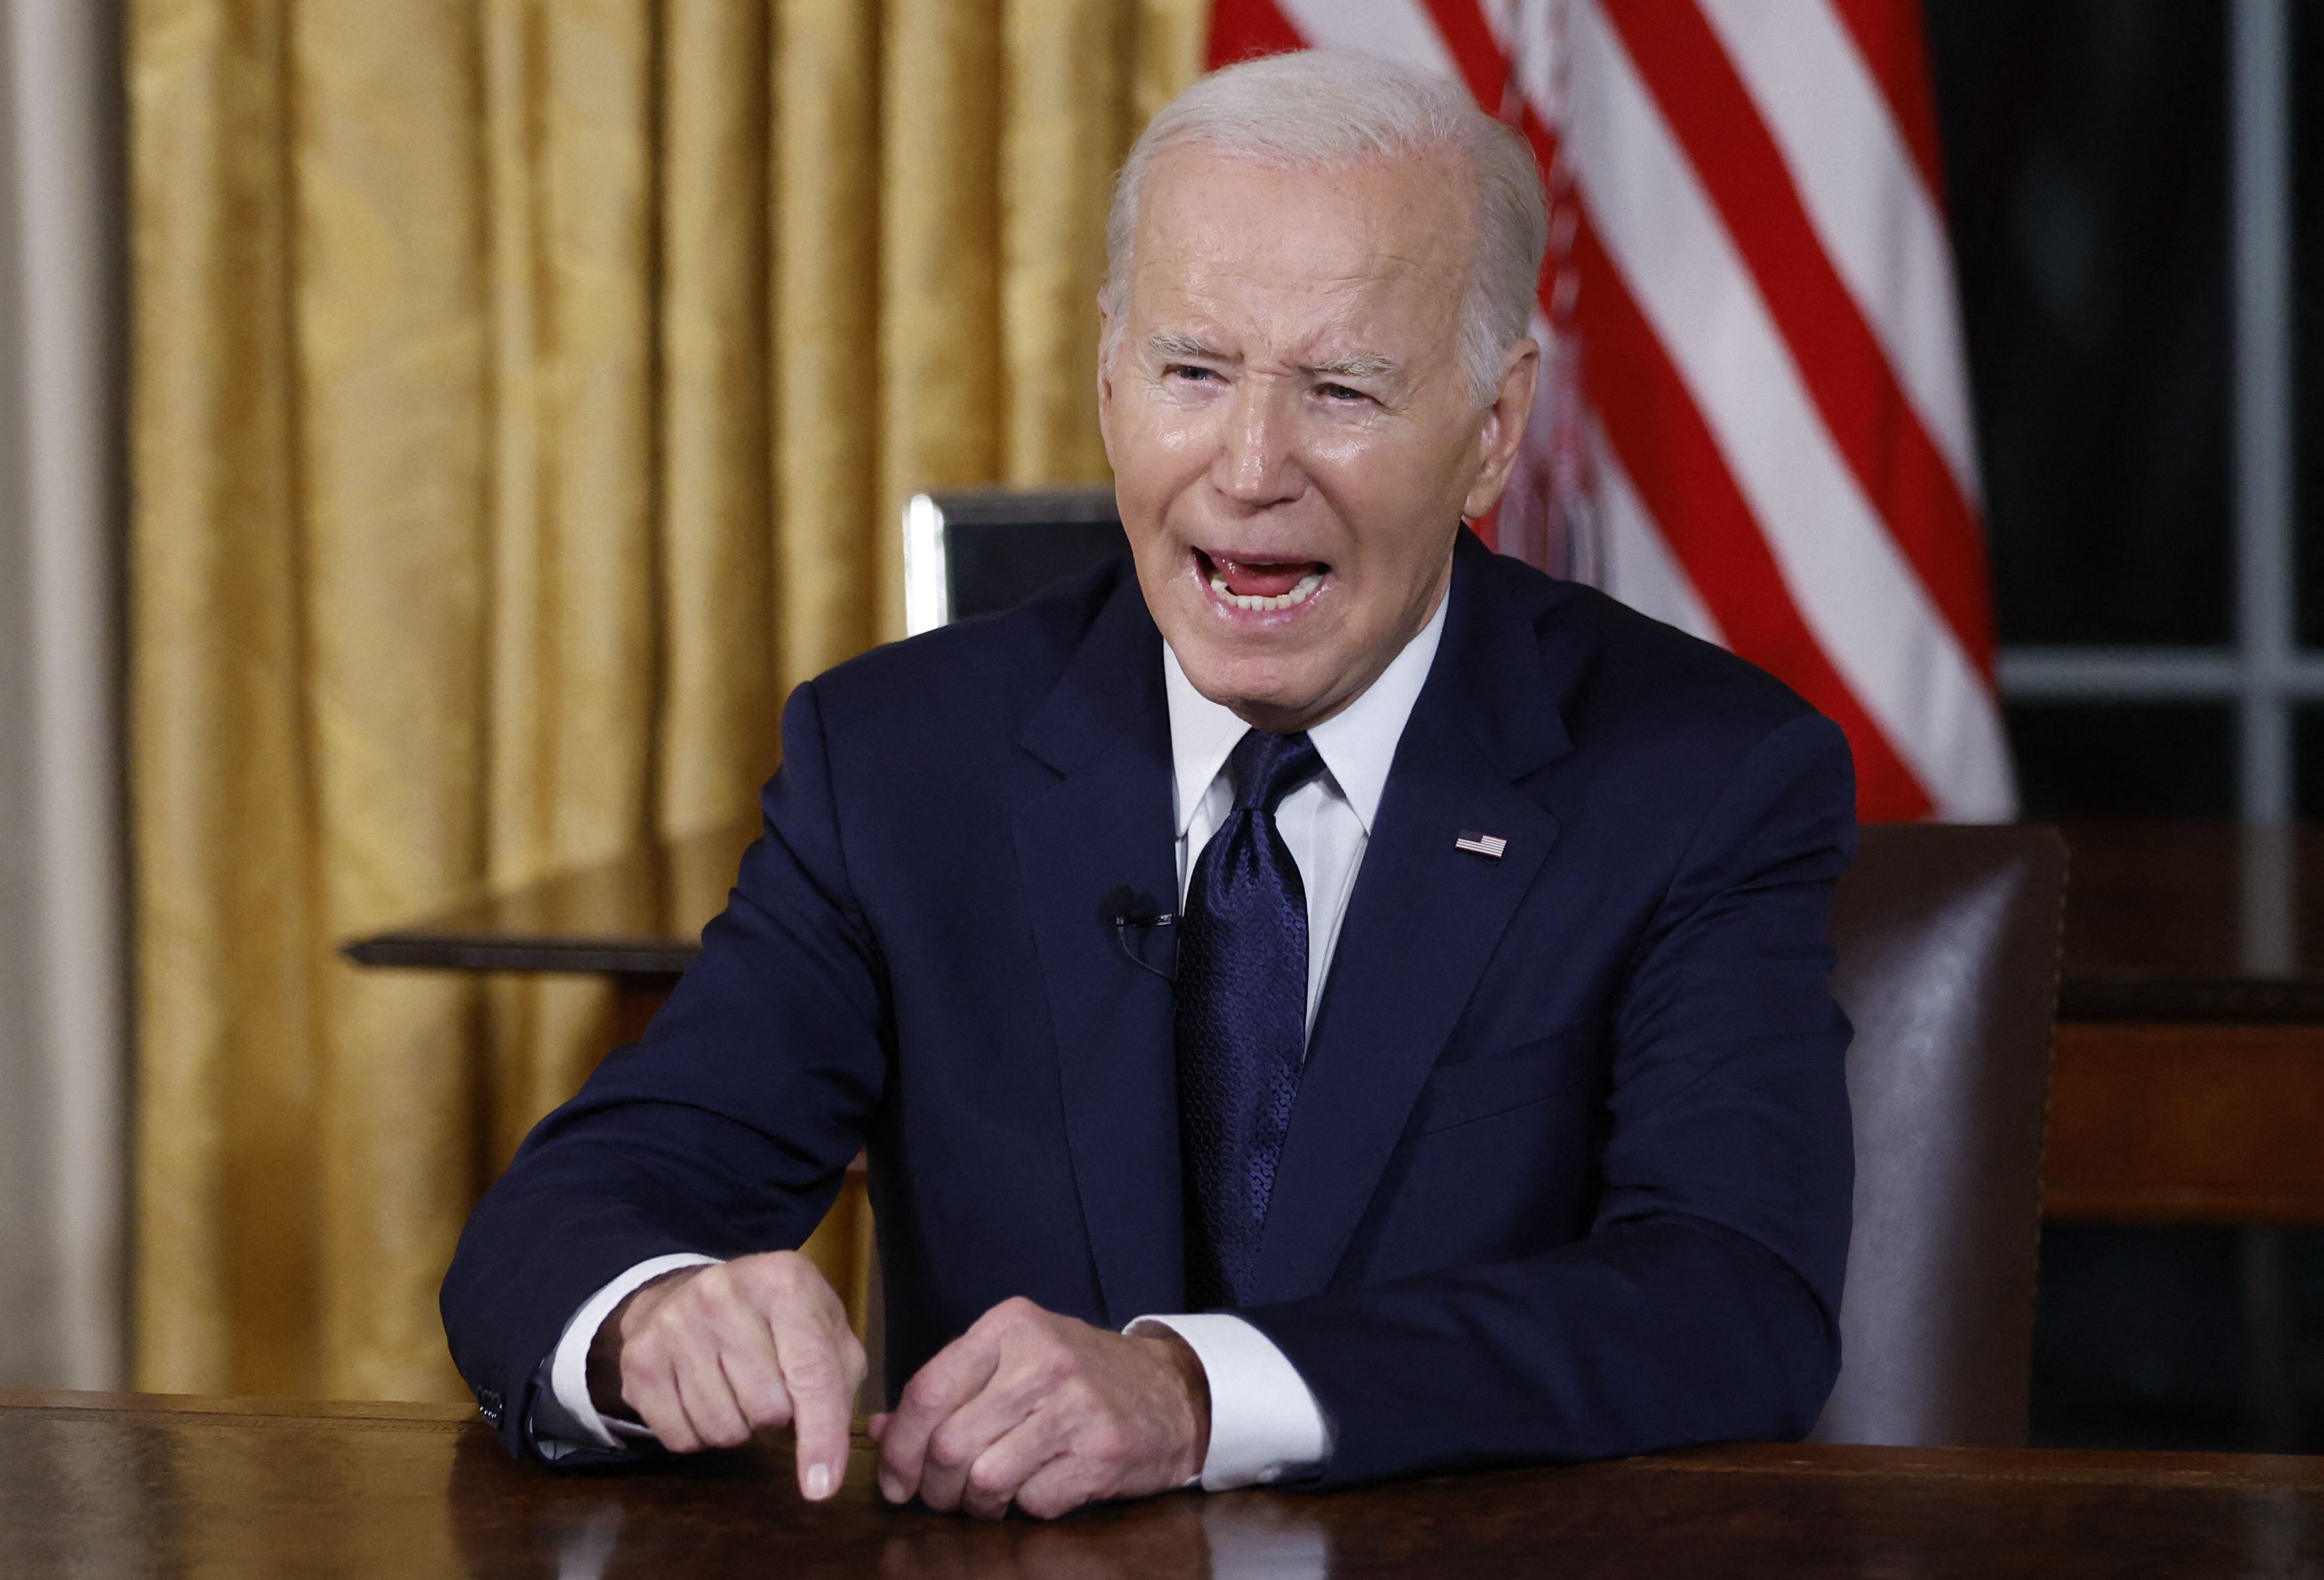 Los ataques en Oriente Medio tocaron las tropas estadounidense con tres soldados muertos. Joe Biden promete represalias.